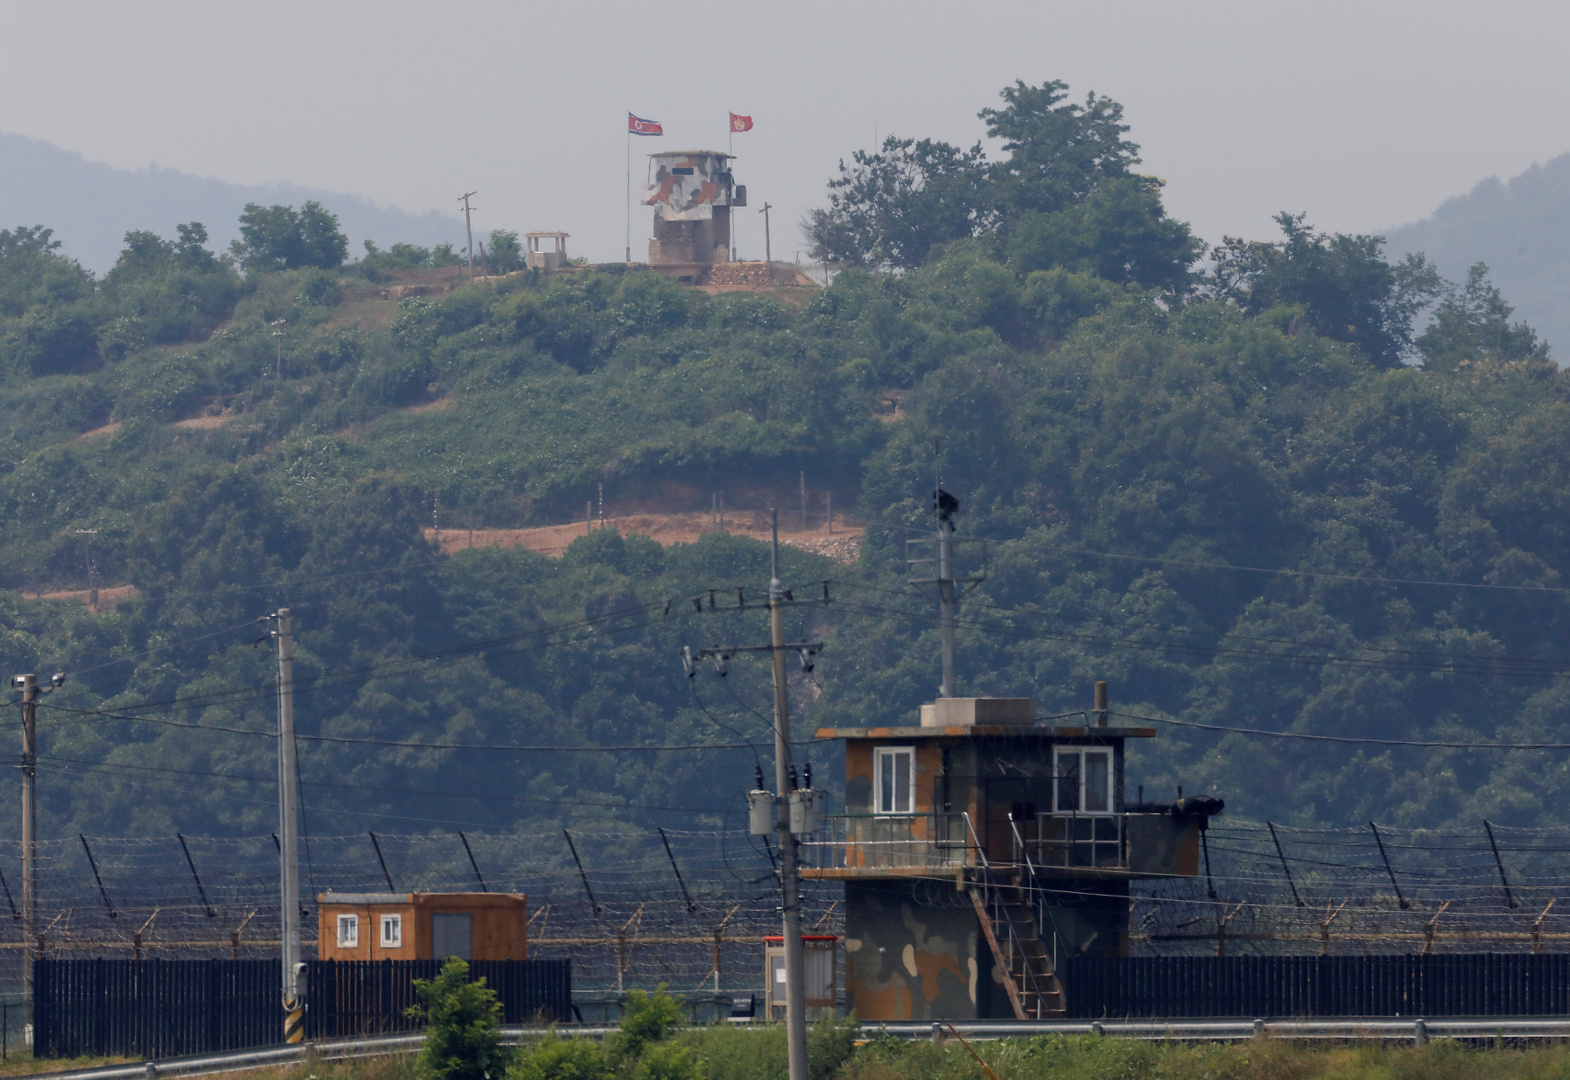 كوريا الشمالية تركب مكبرات للصوت في مناطق حدودية